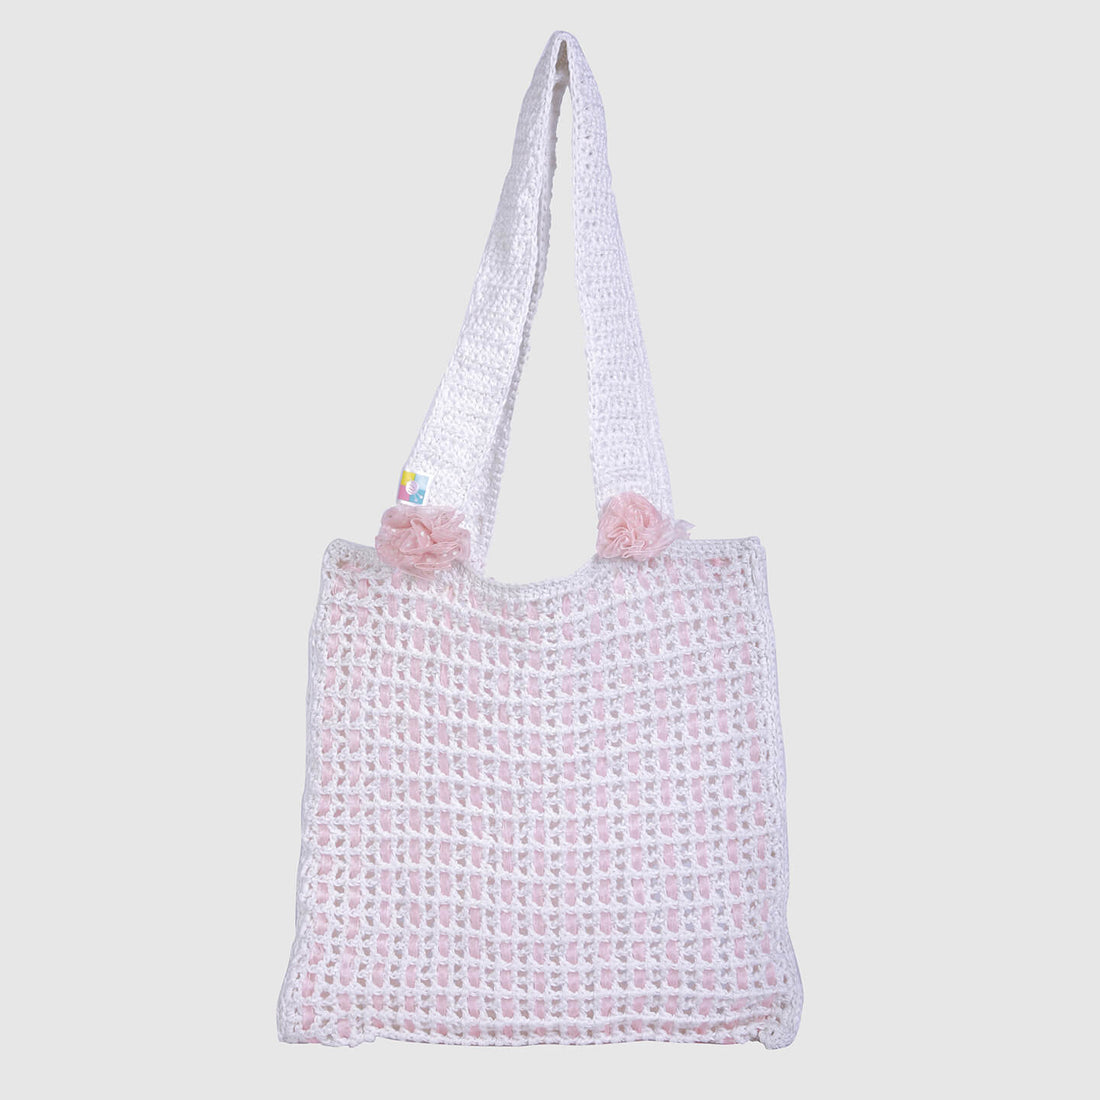 Handmade Crochet Bag - White 3127